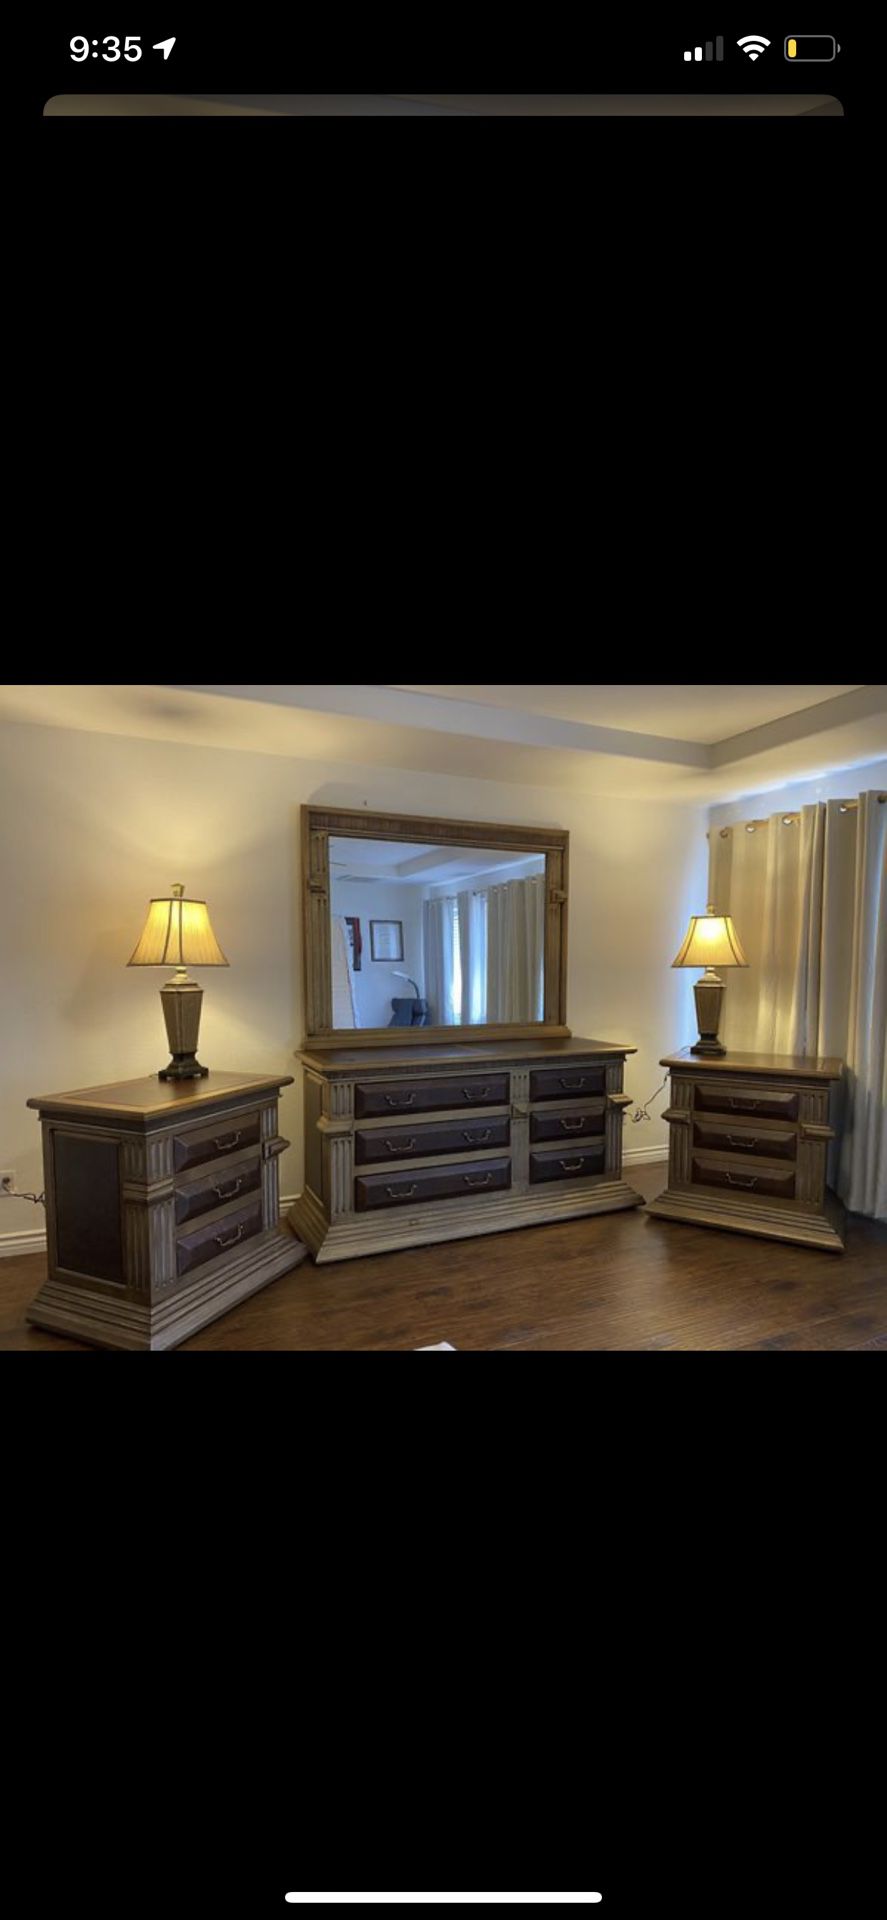 Bedroom set, Dresser, Nightstands, Mirror & Lamp